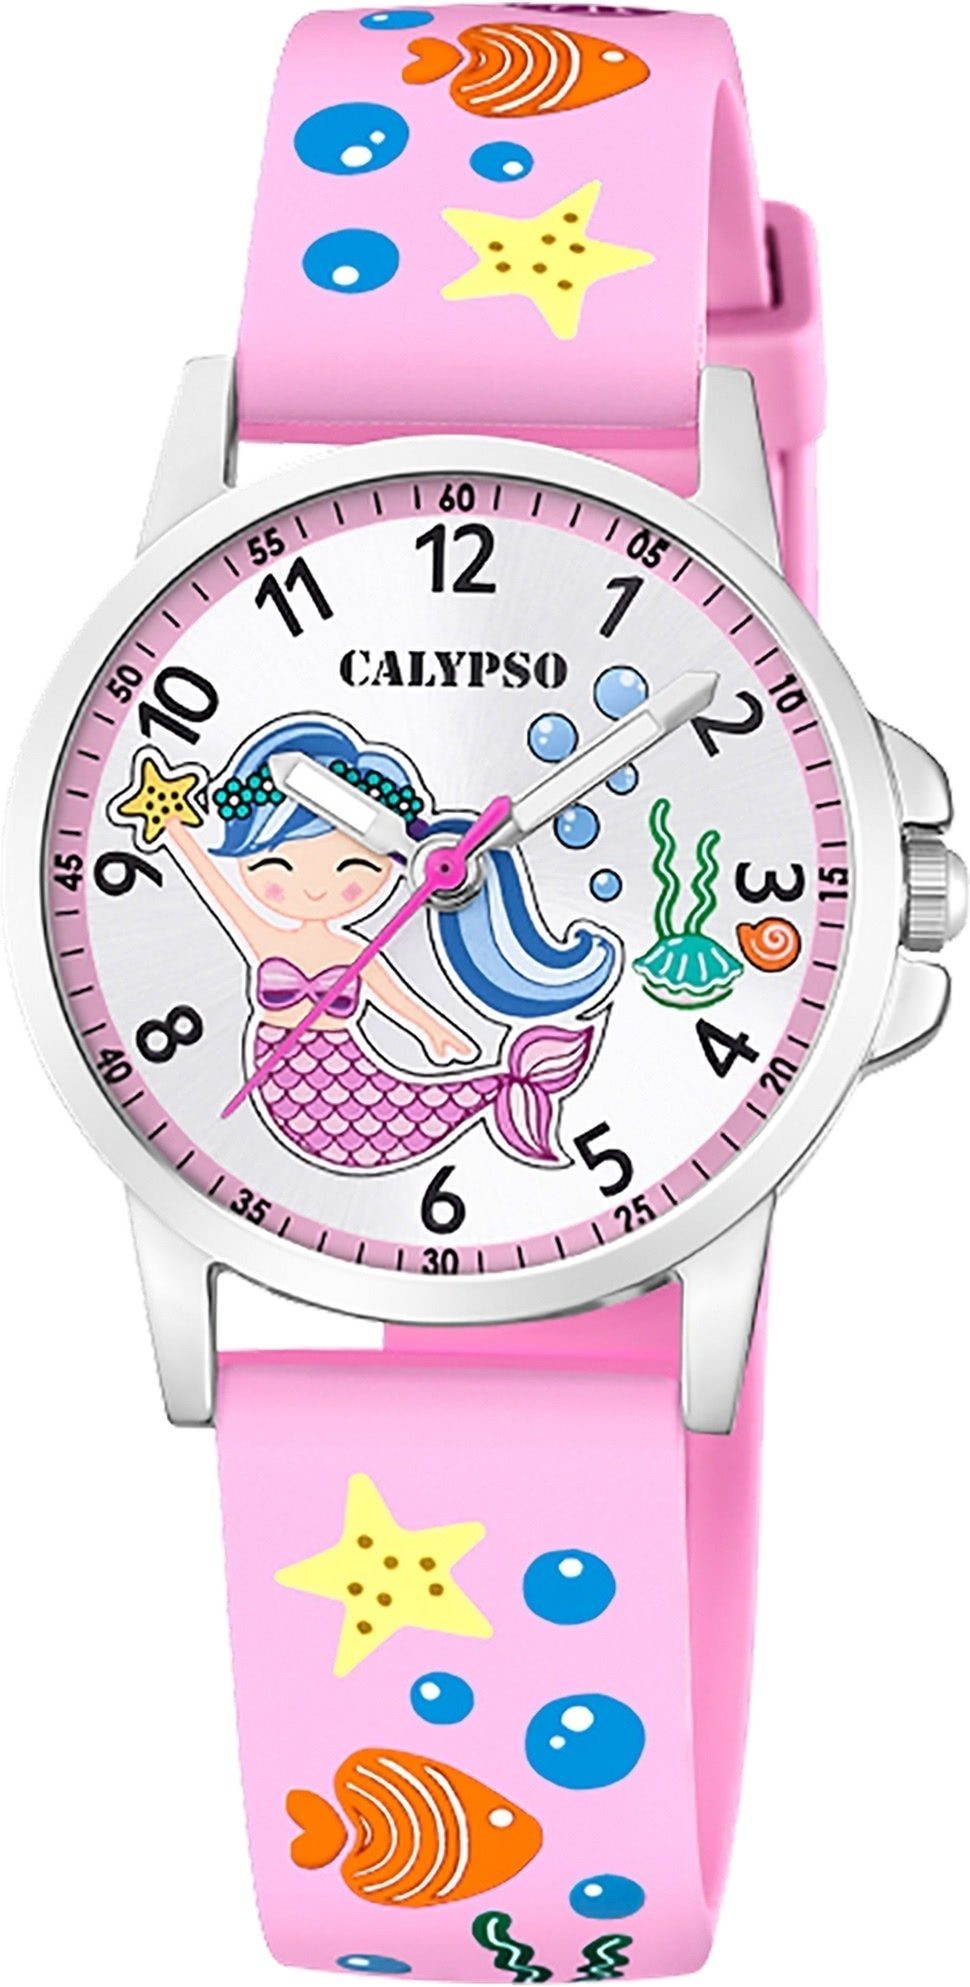 Uhren für Mädchen » Verspielte Kinderuhren | OTTO